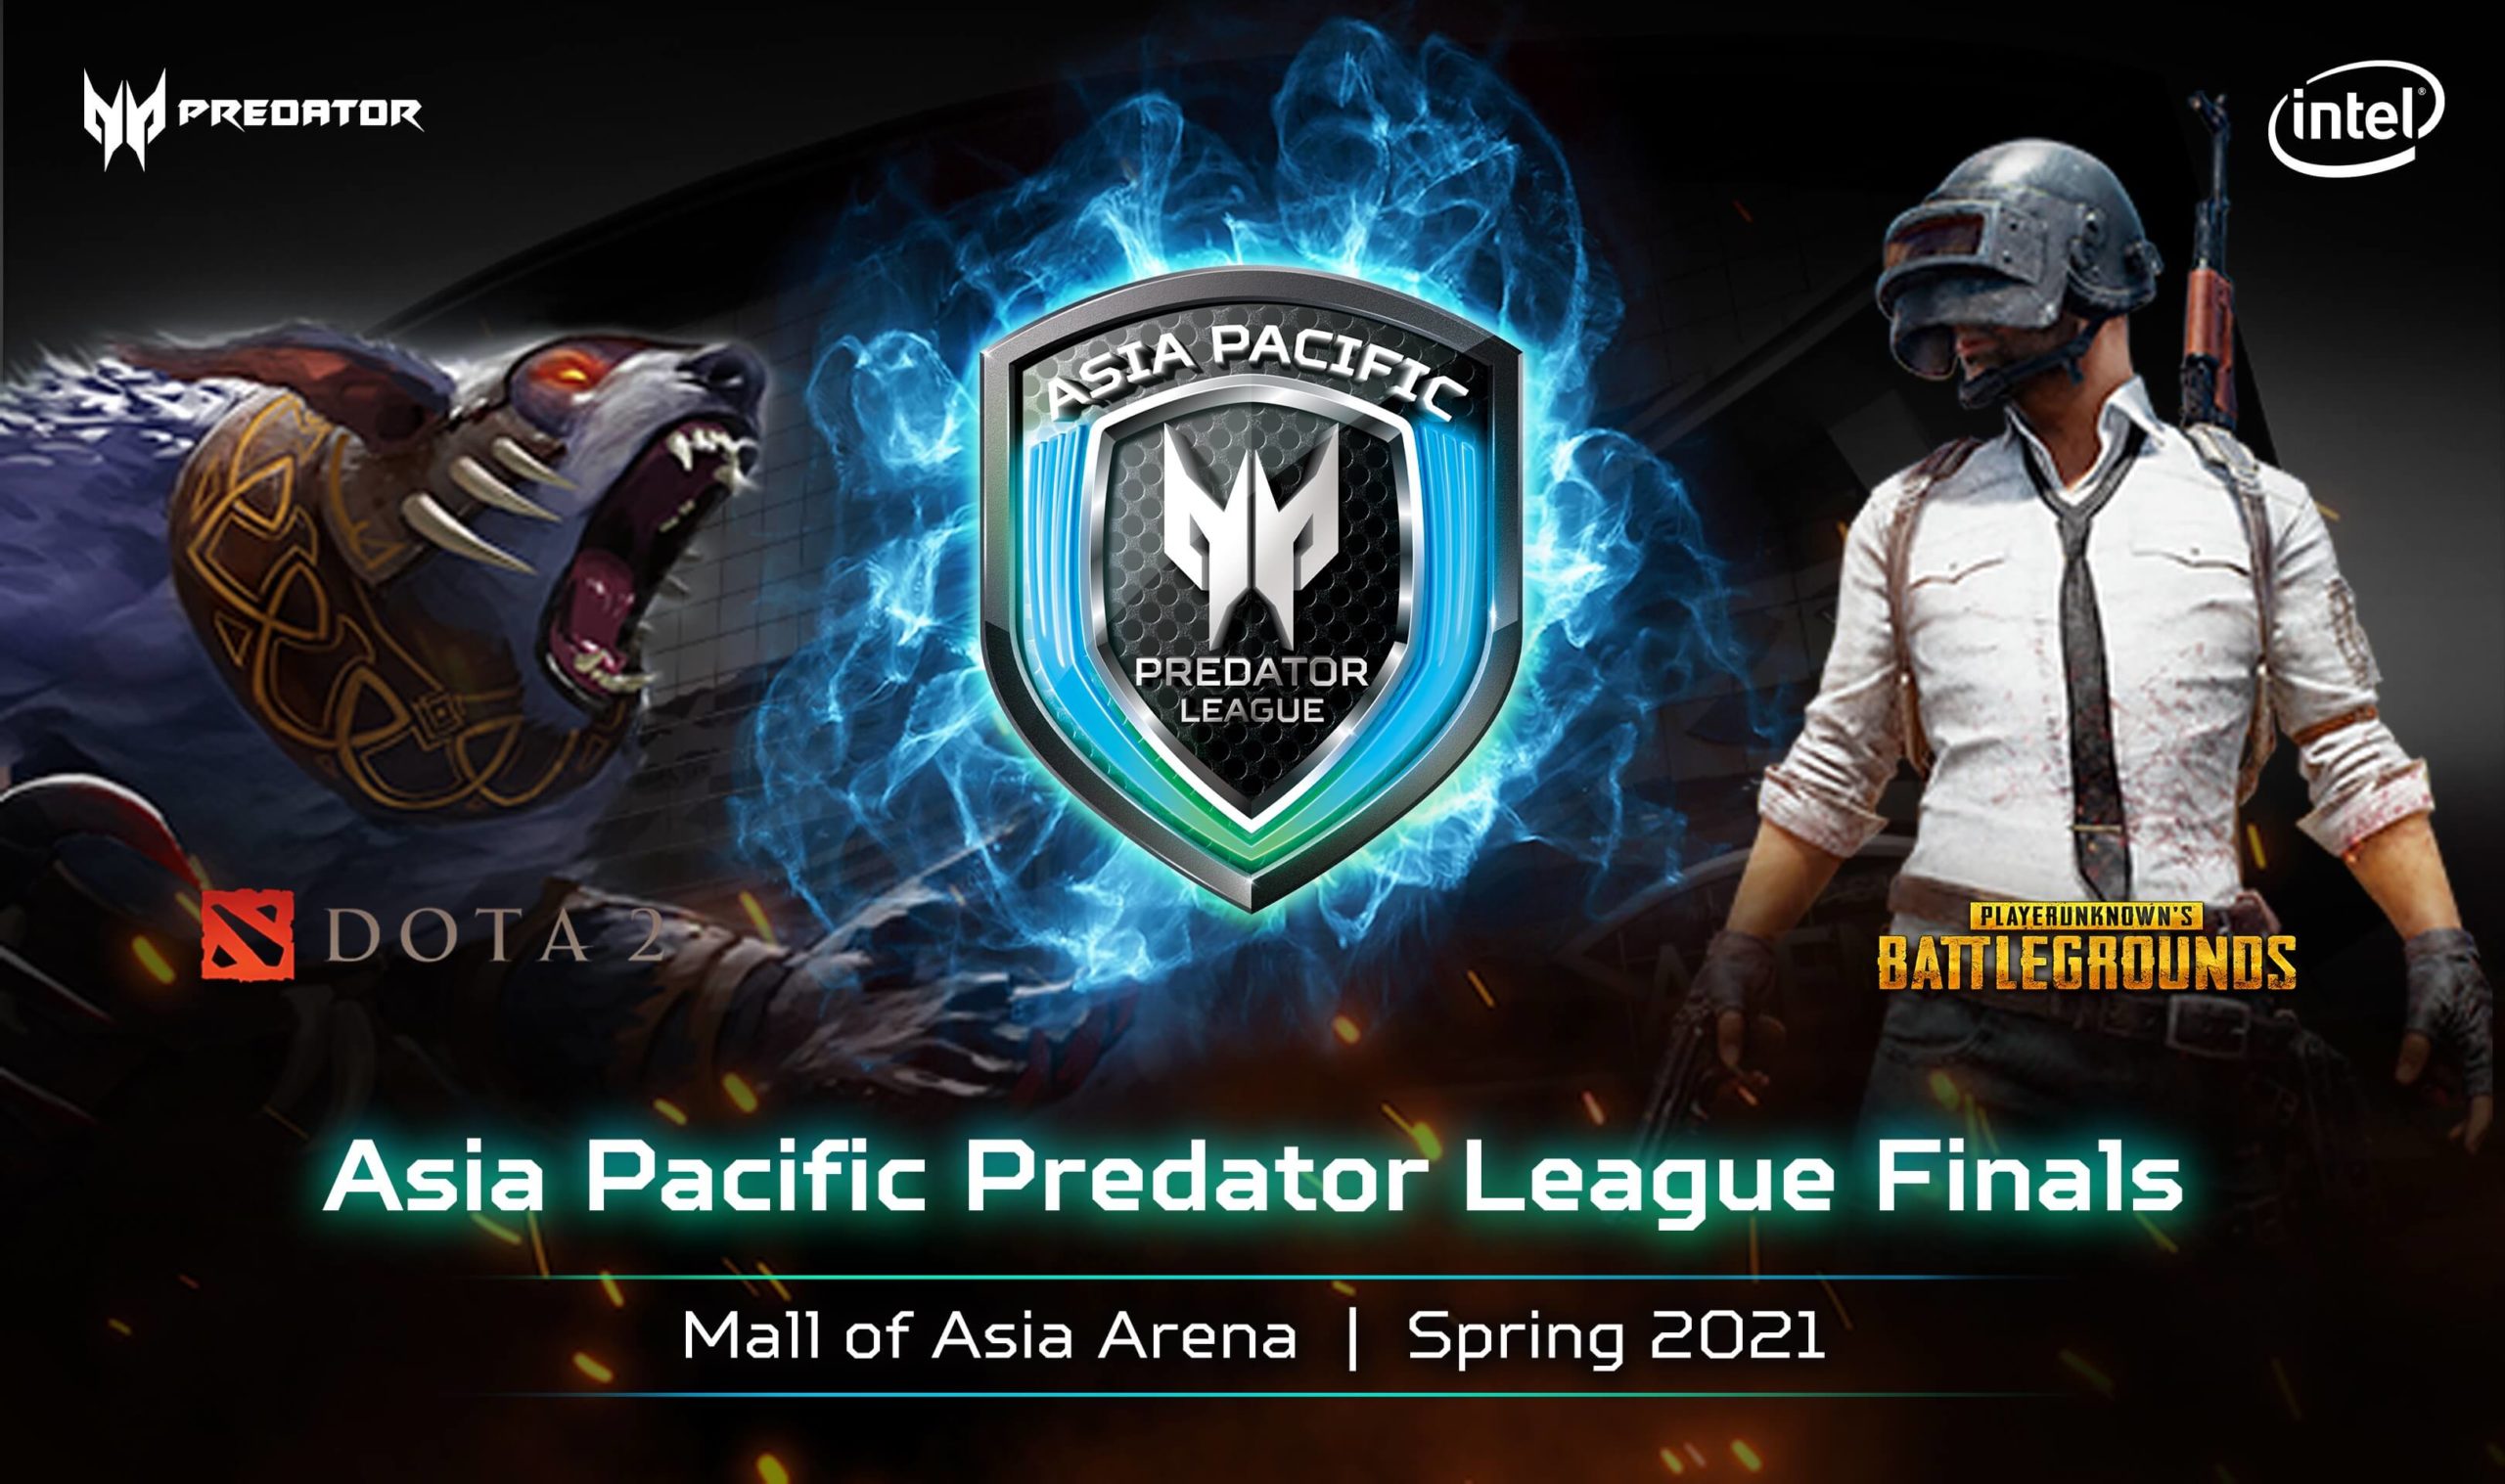 APAC Predator League 2020 is Postponed to Spring 2021